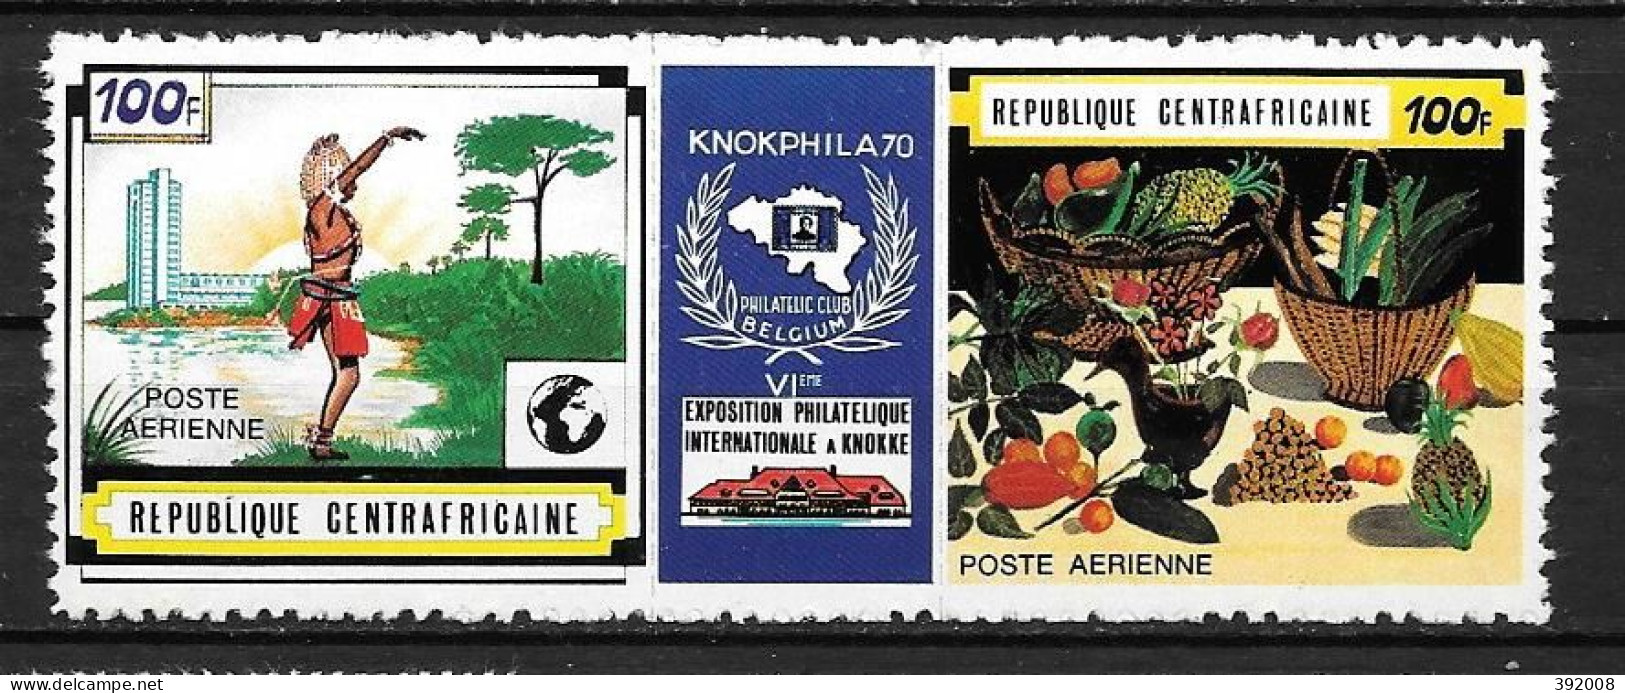 PA - 1970 - N°85A**MNH - Expo Philatélique En Belgique - Centrafricaine (République)